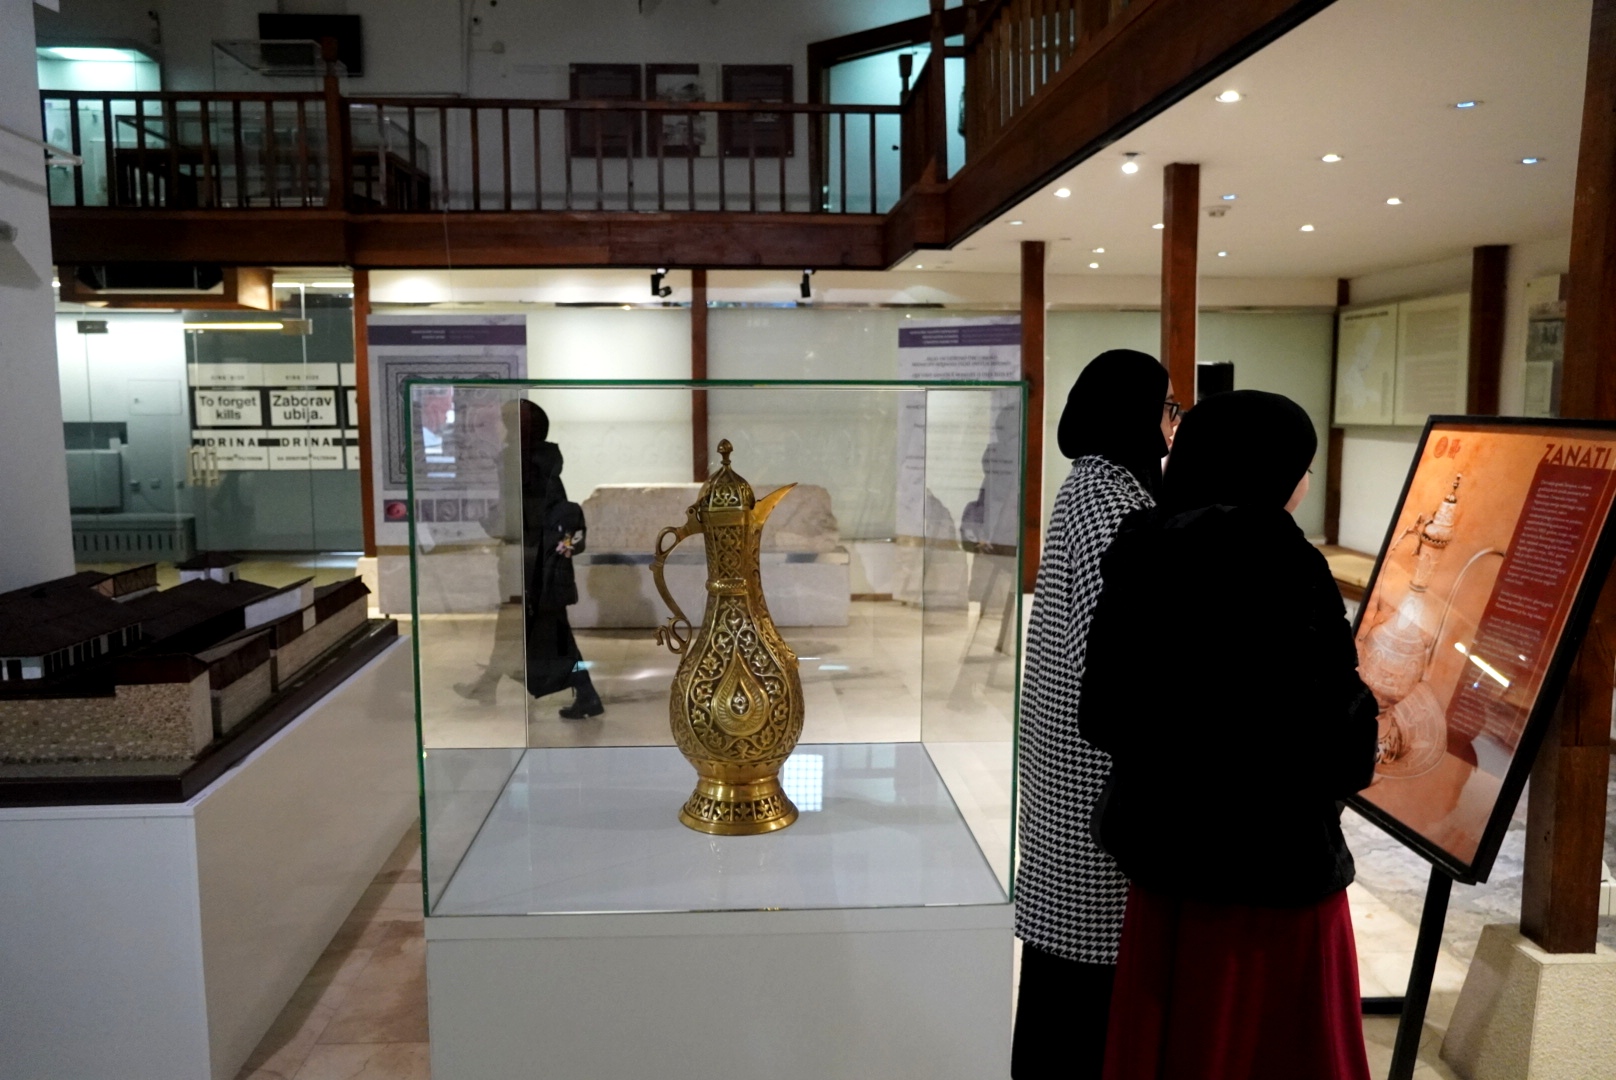 Članovi Historijske sekcije posjetili JU Muzej Sarajeva, Brusa bezistan